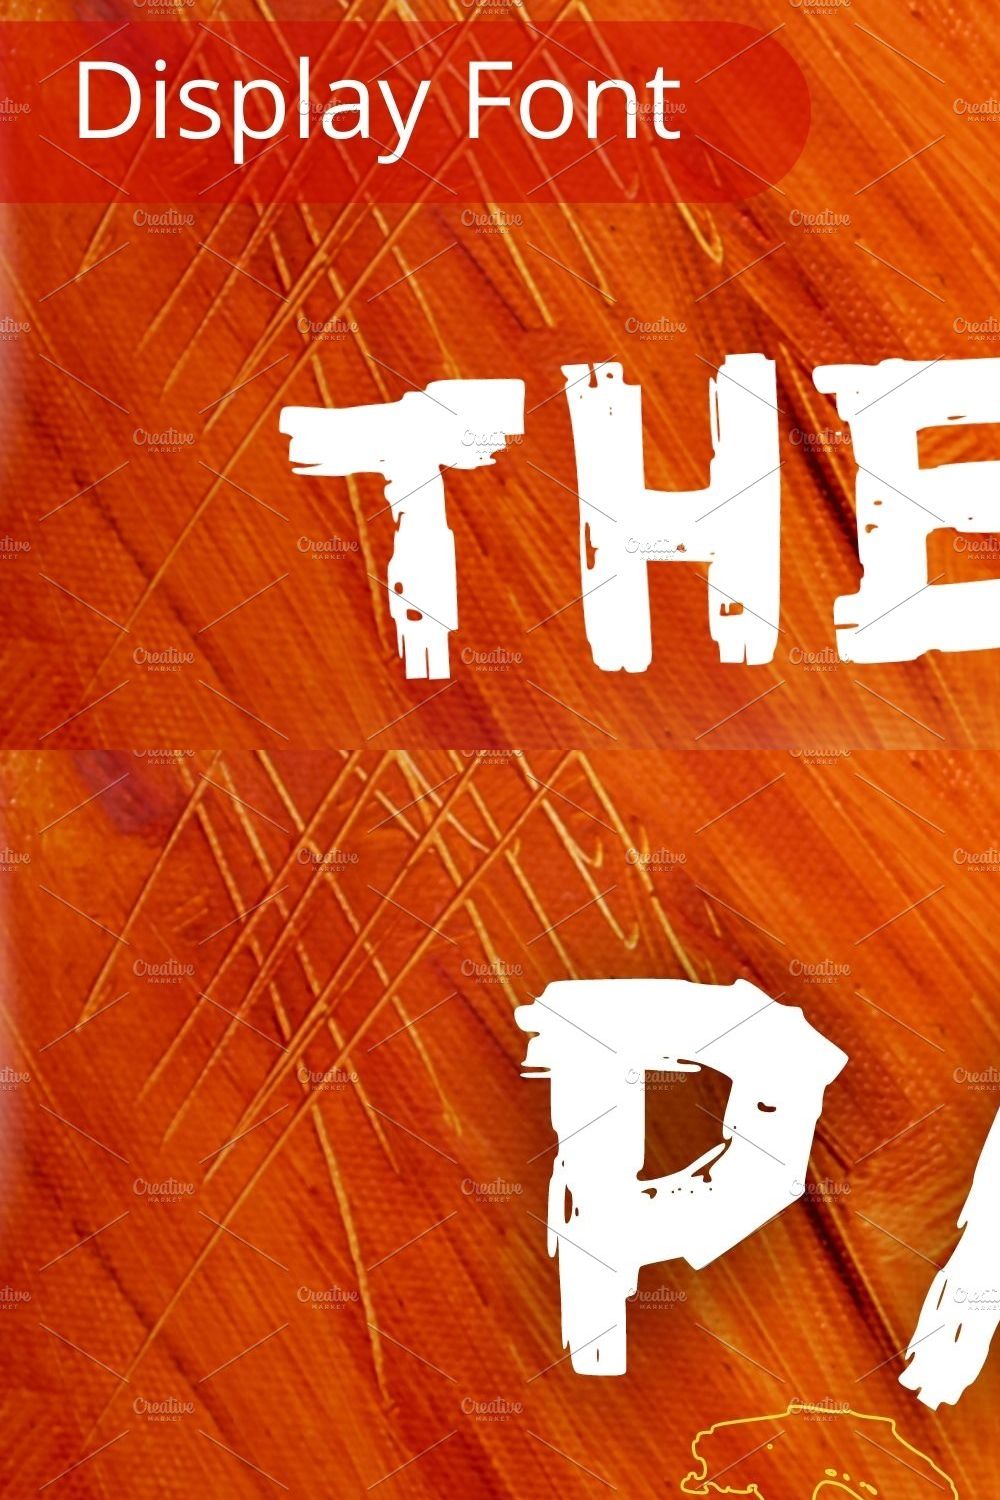 The Orange Endgame, Horror Font pinterest preview image.